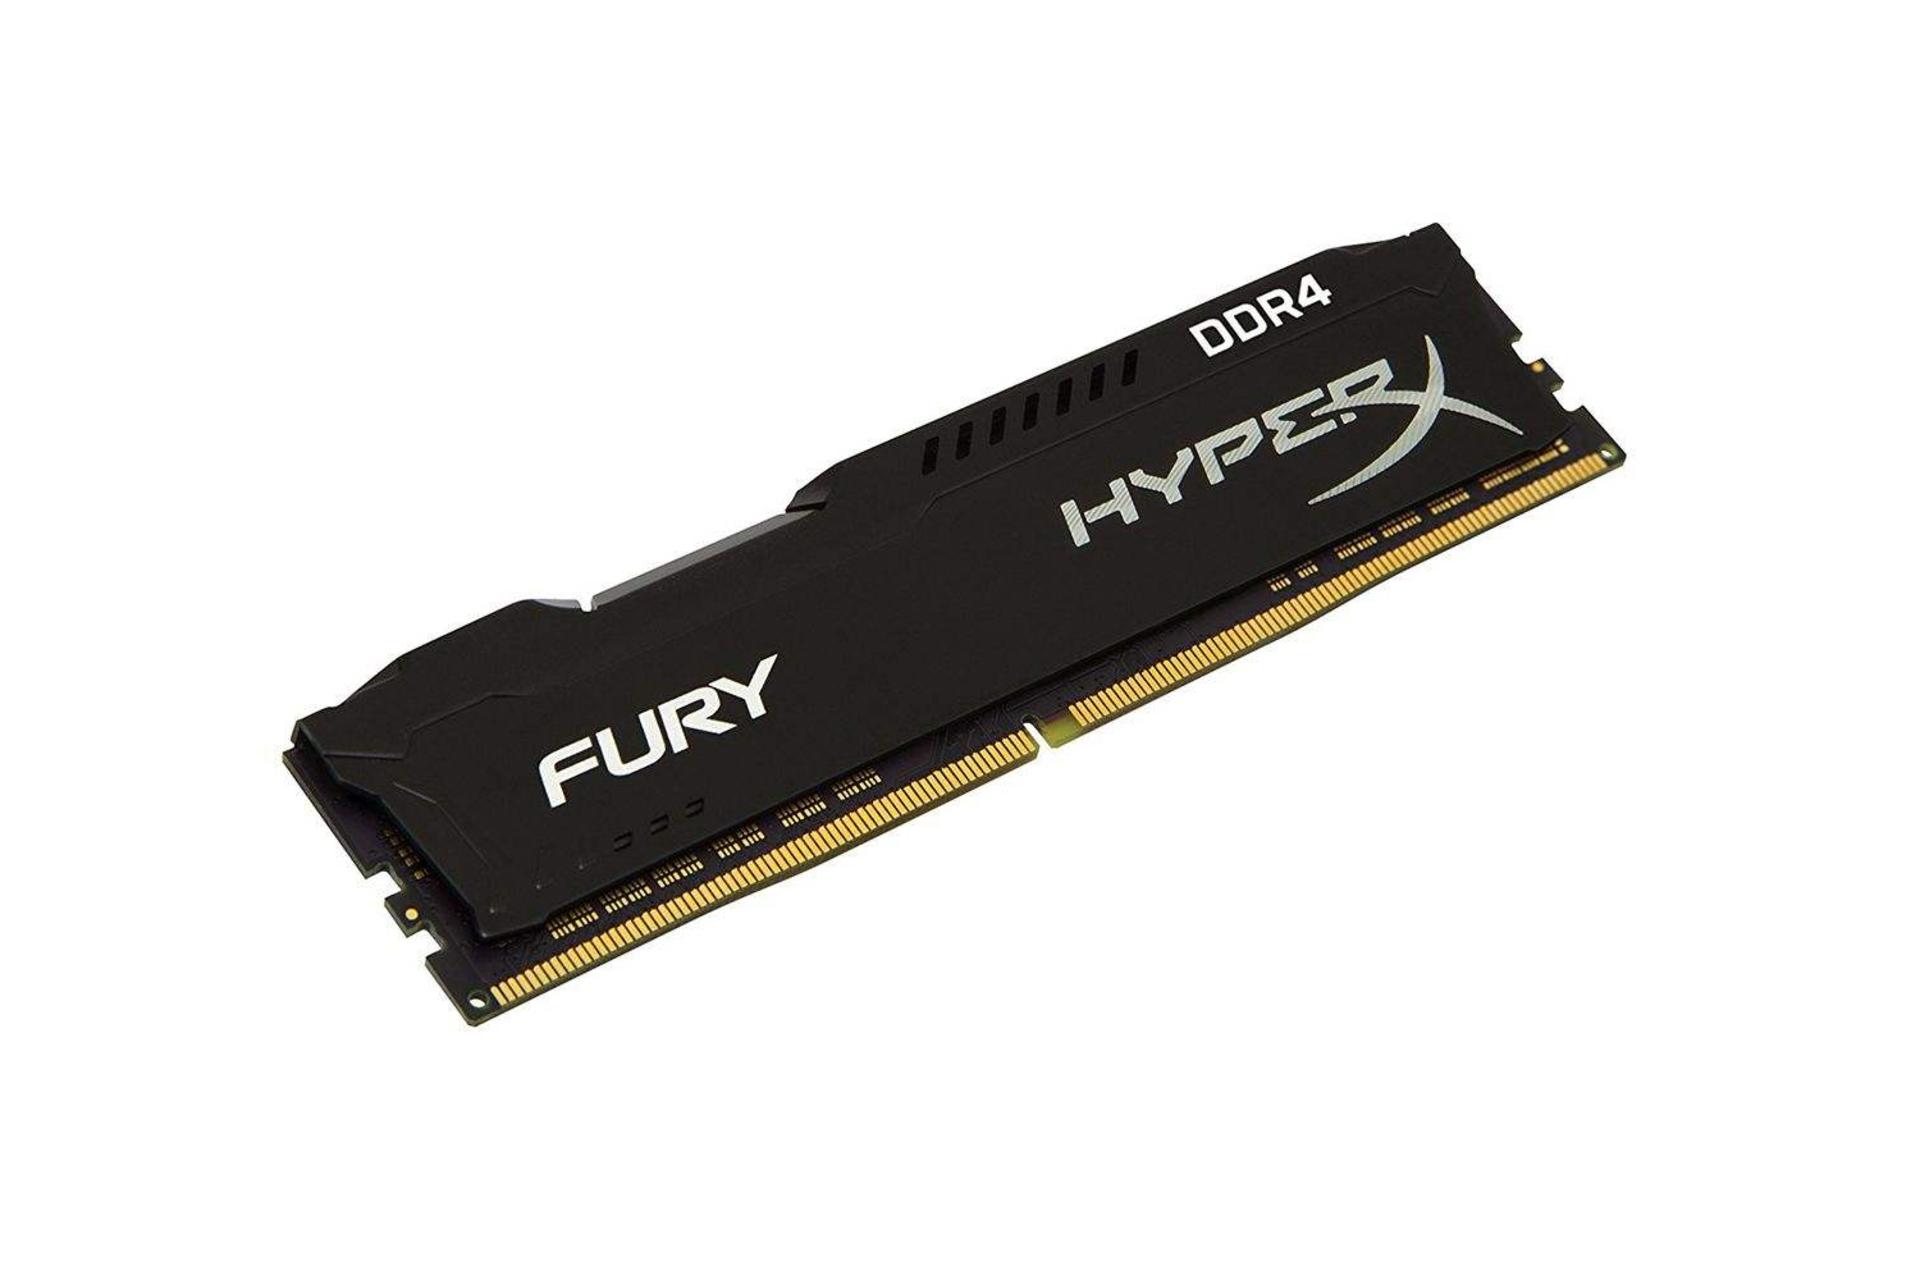 نمای کنار هایپرایکس Fury ظرفیت 16 گیگابایت از نوع DDR4-2400